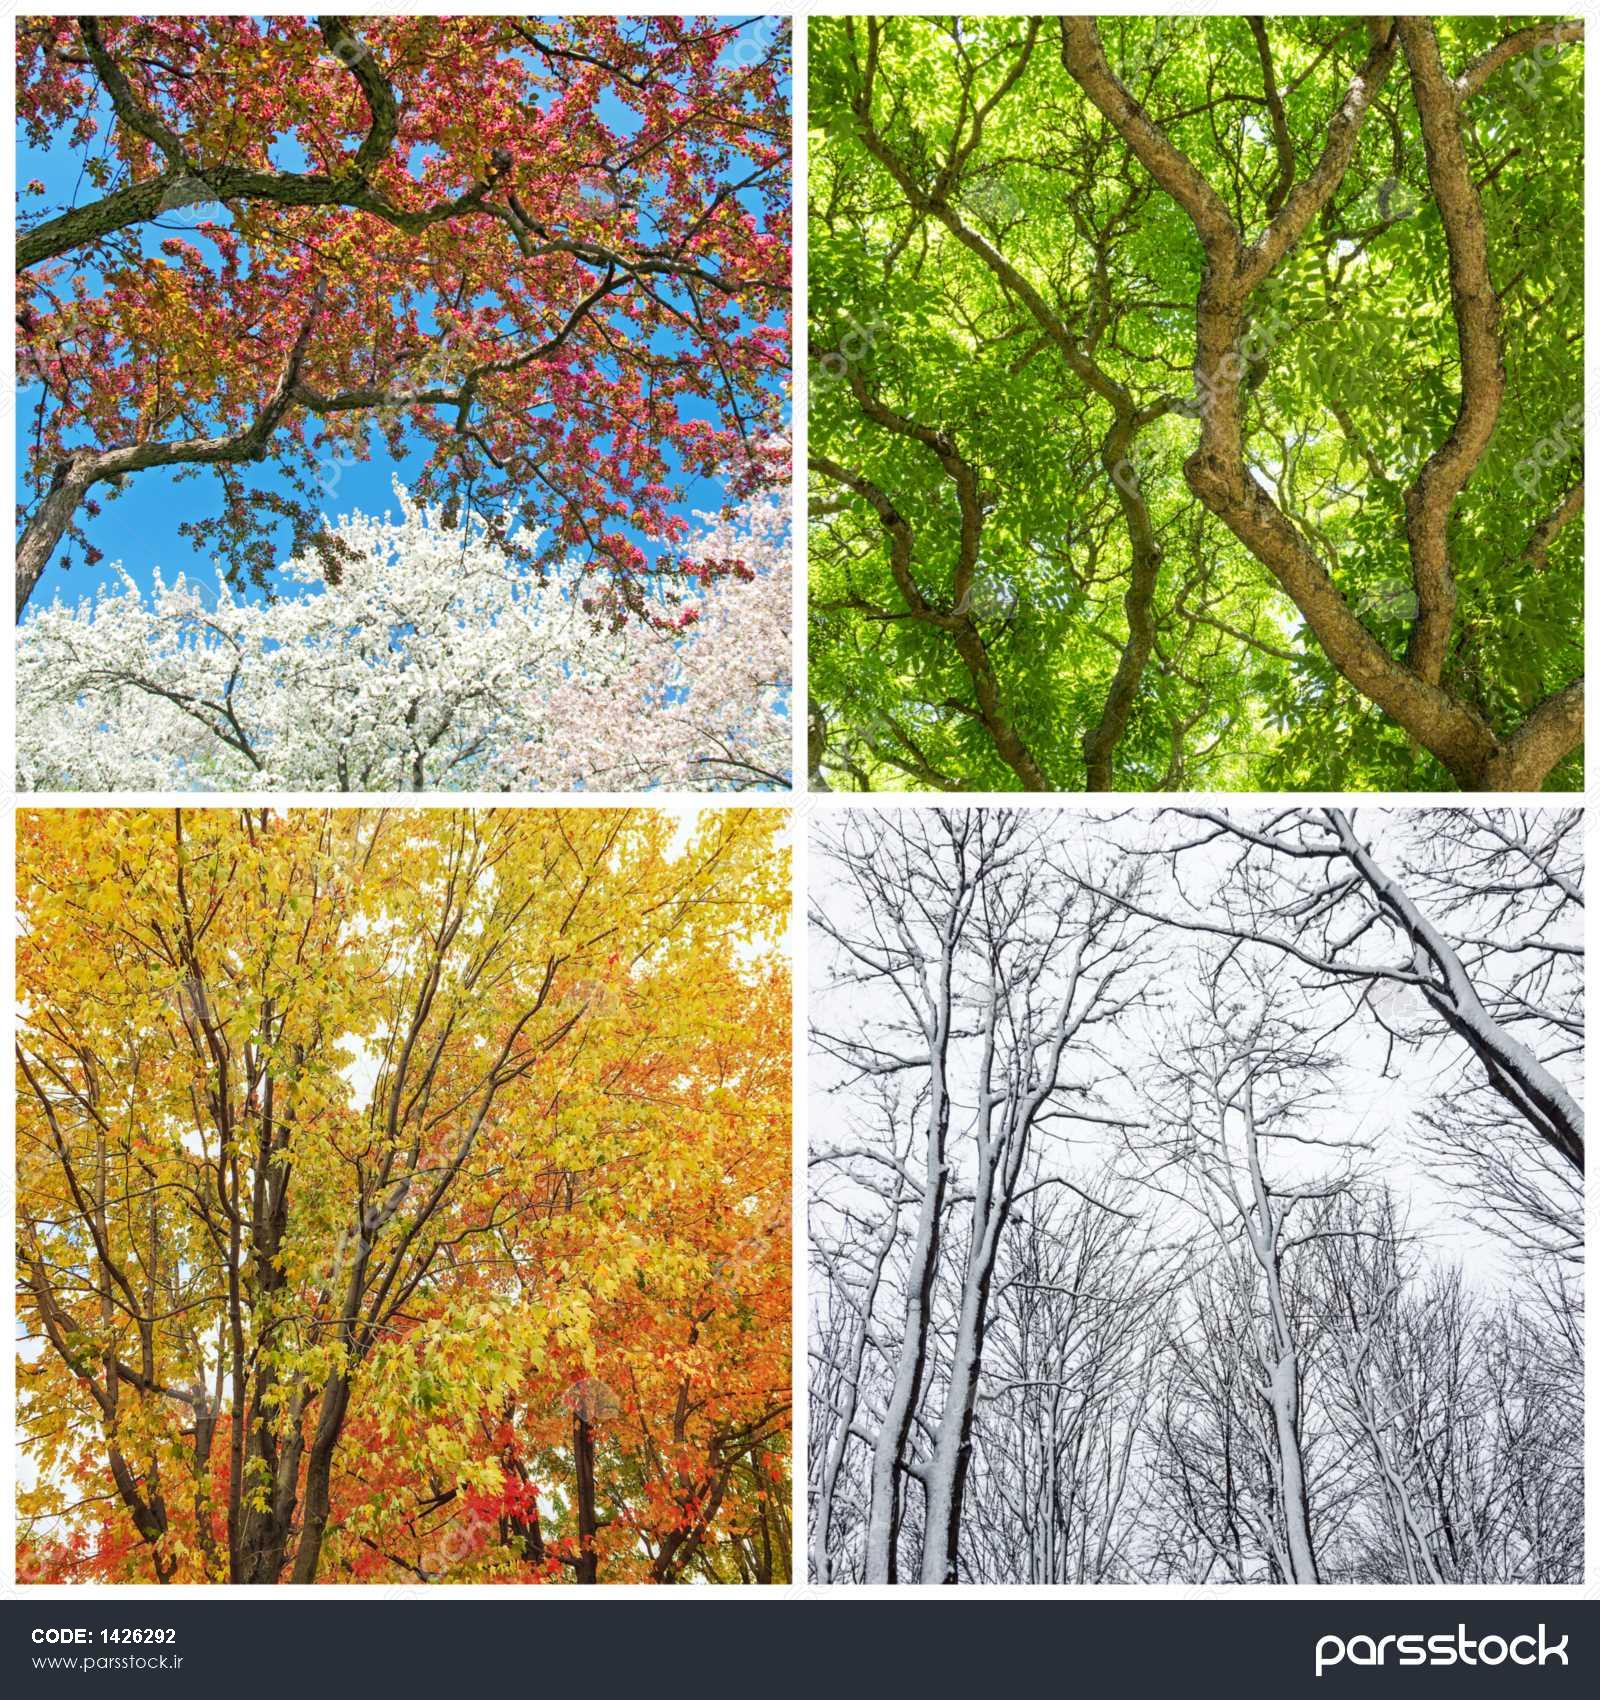 عکس یک درخت در چهار فصل